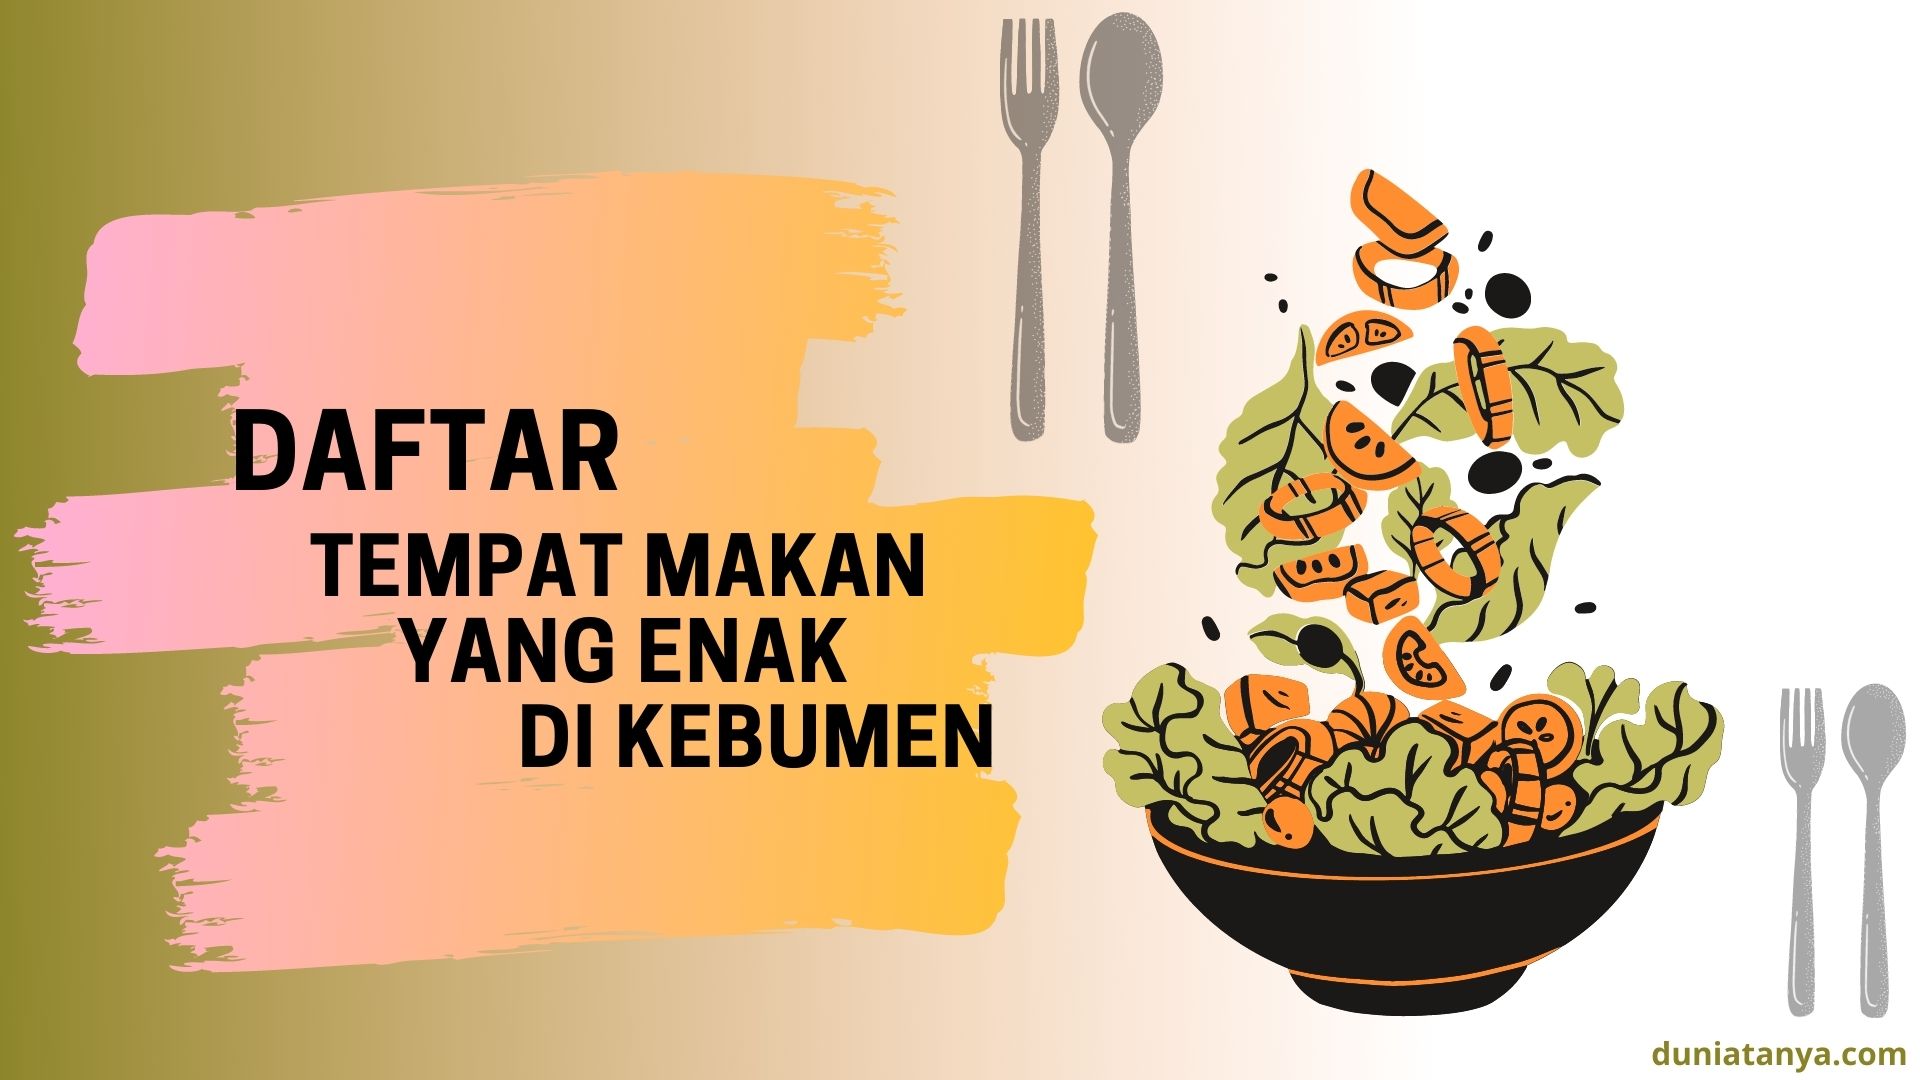 You are currently viewing Daftar Tempat Makan Yang Enak Di Kebumen